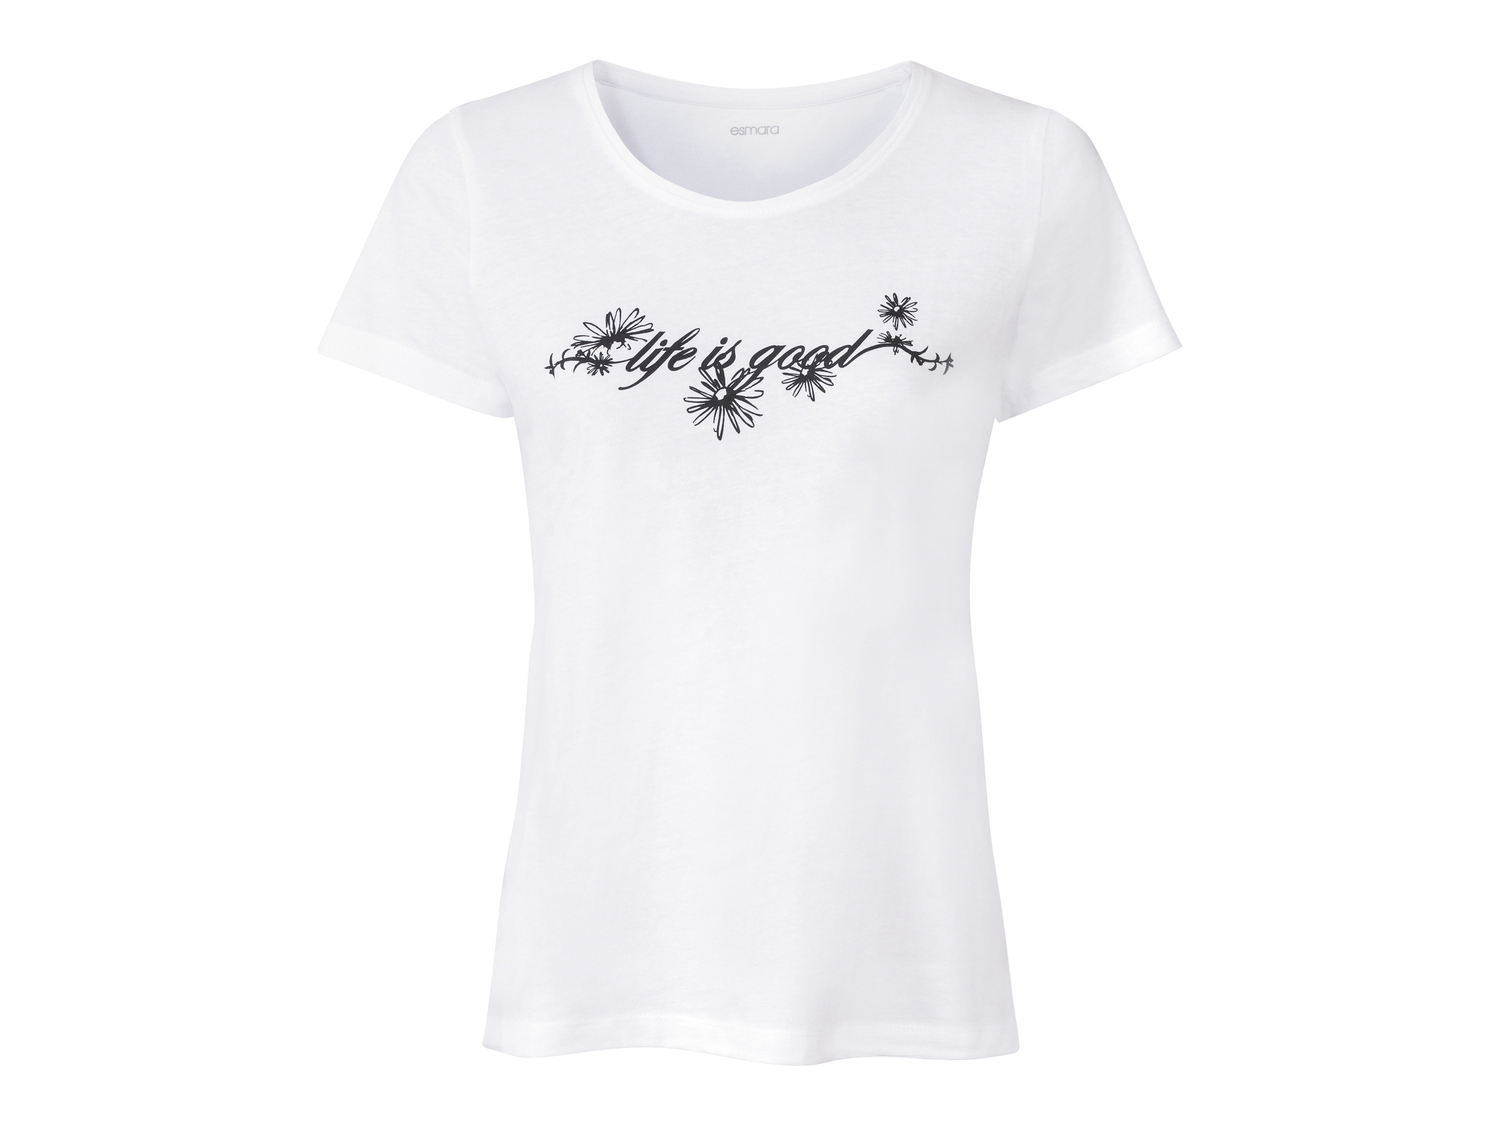 T-shirt da donna Esmara, prezzo 2.99 &#8364; 
Misure: S-L 
- Puro cotone
Prodotto ...